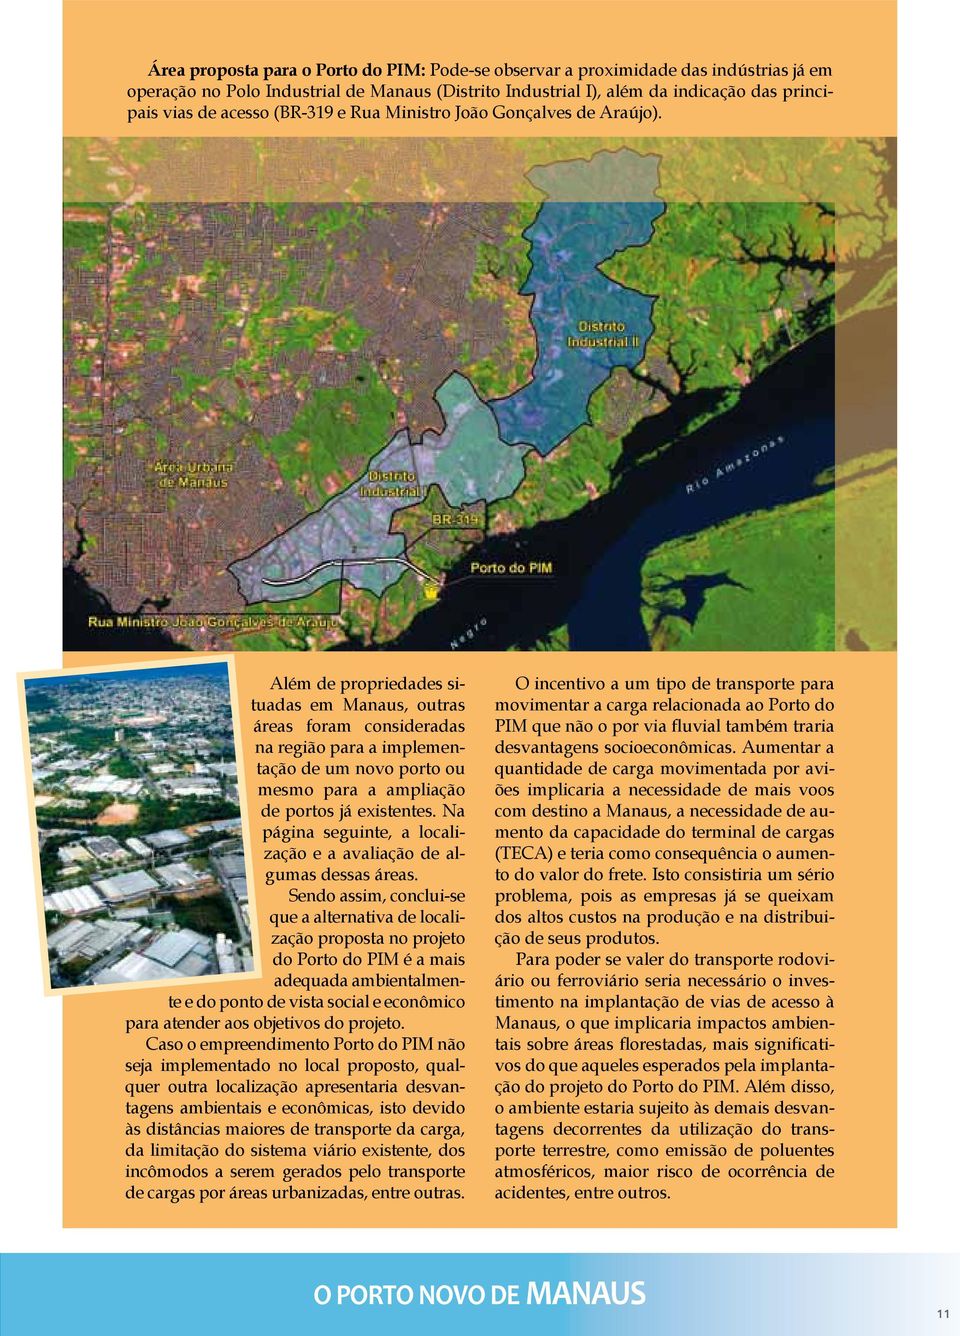 Além de propriedades situadas em Manaus, outras áreas foram consideradas na região para a implementação de um novo porto ou mesmo para a ampliação de portos já existentes.